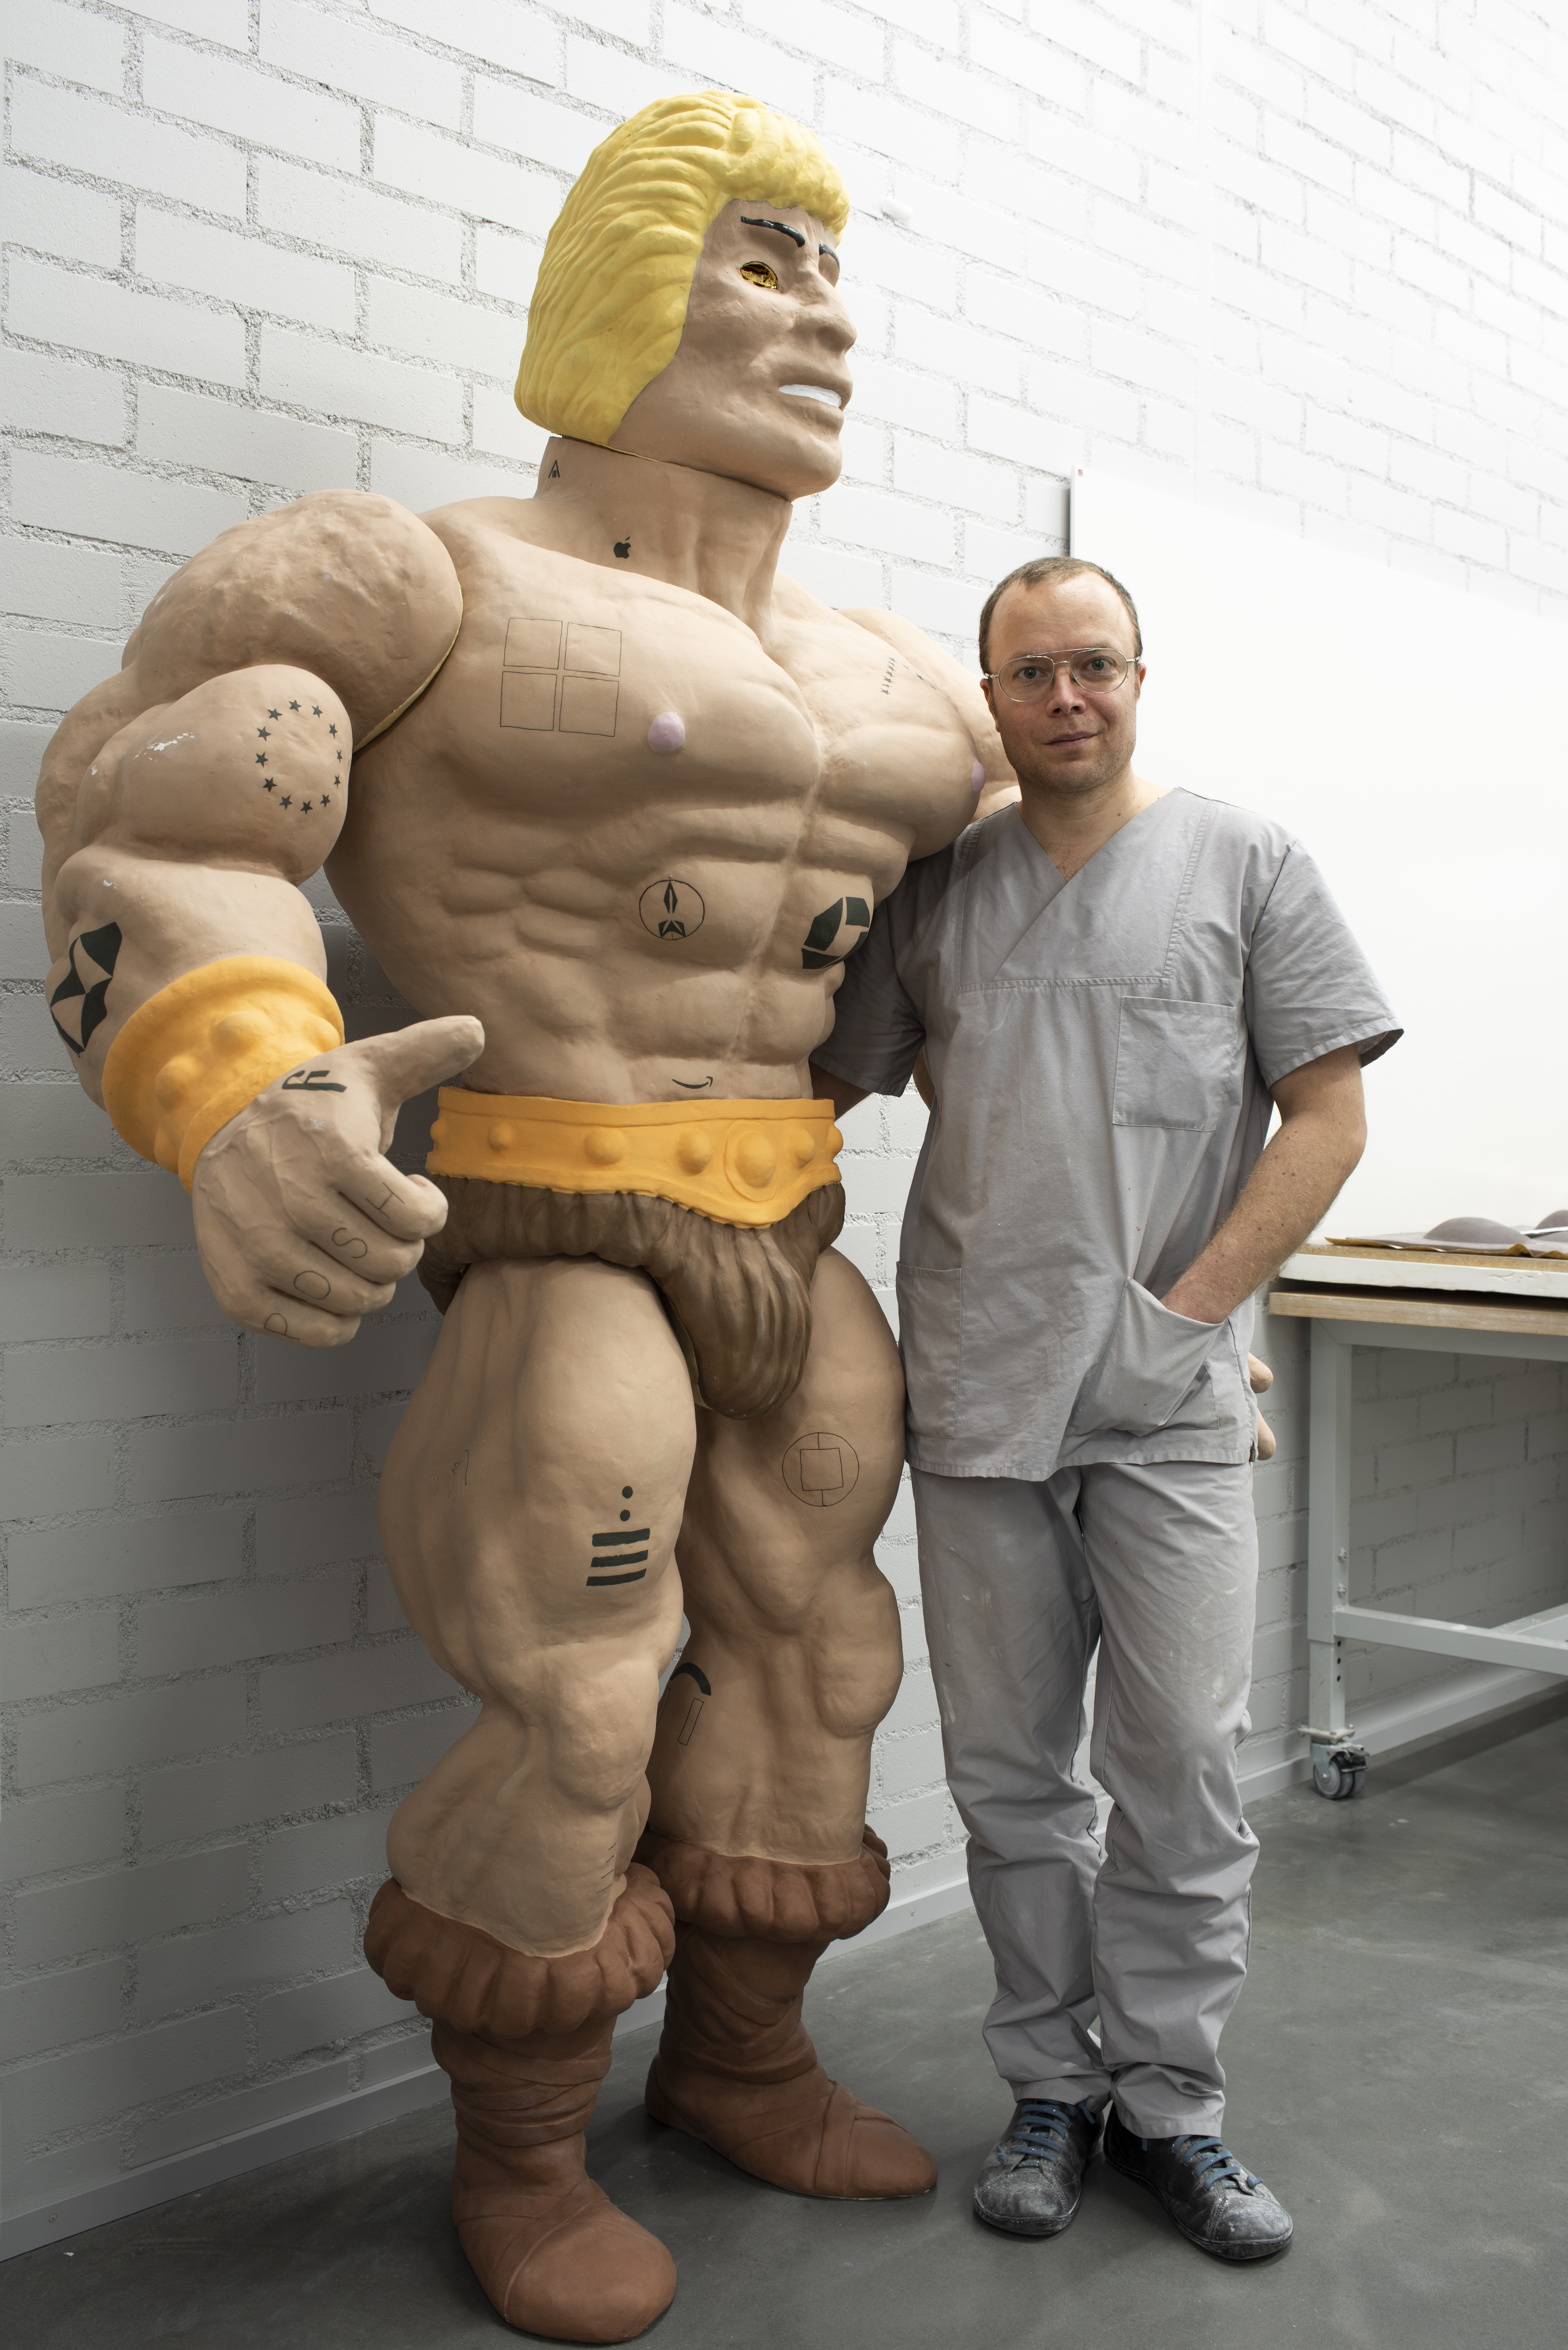 Teemu Siika with Heman hand-built sculpture by Anne Kinnunen